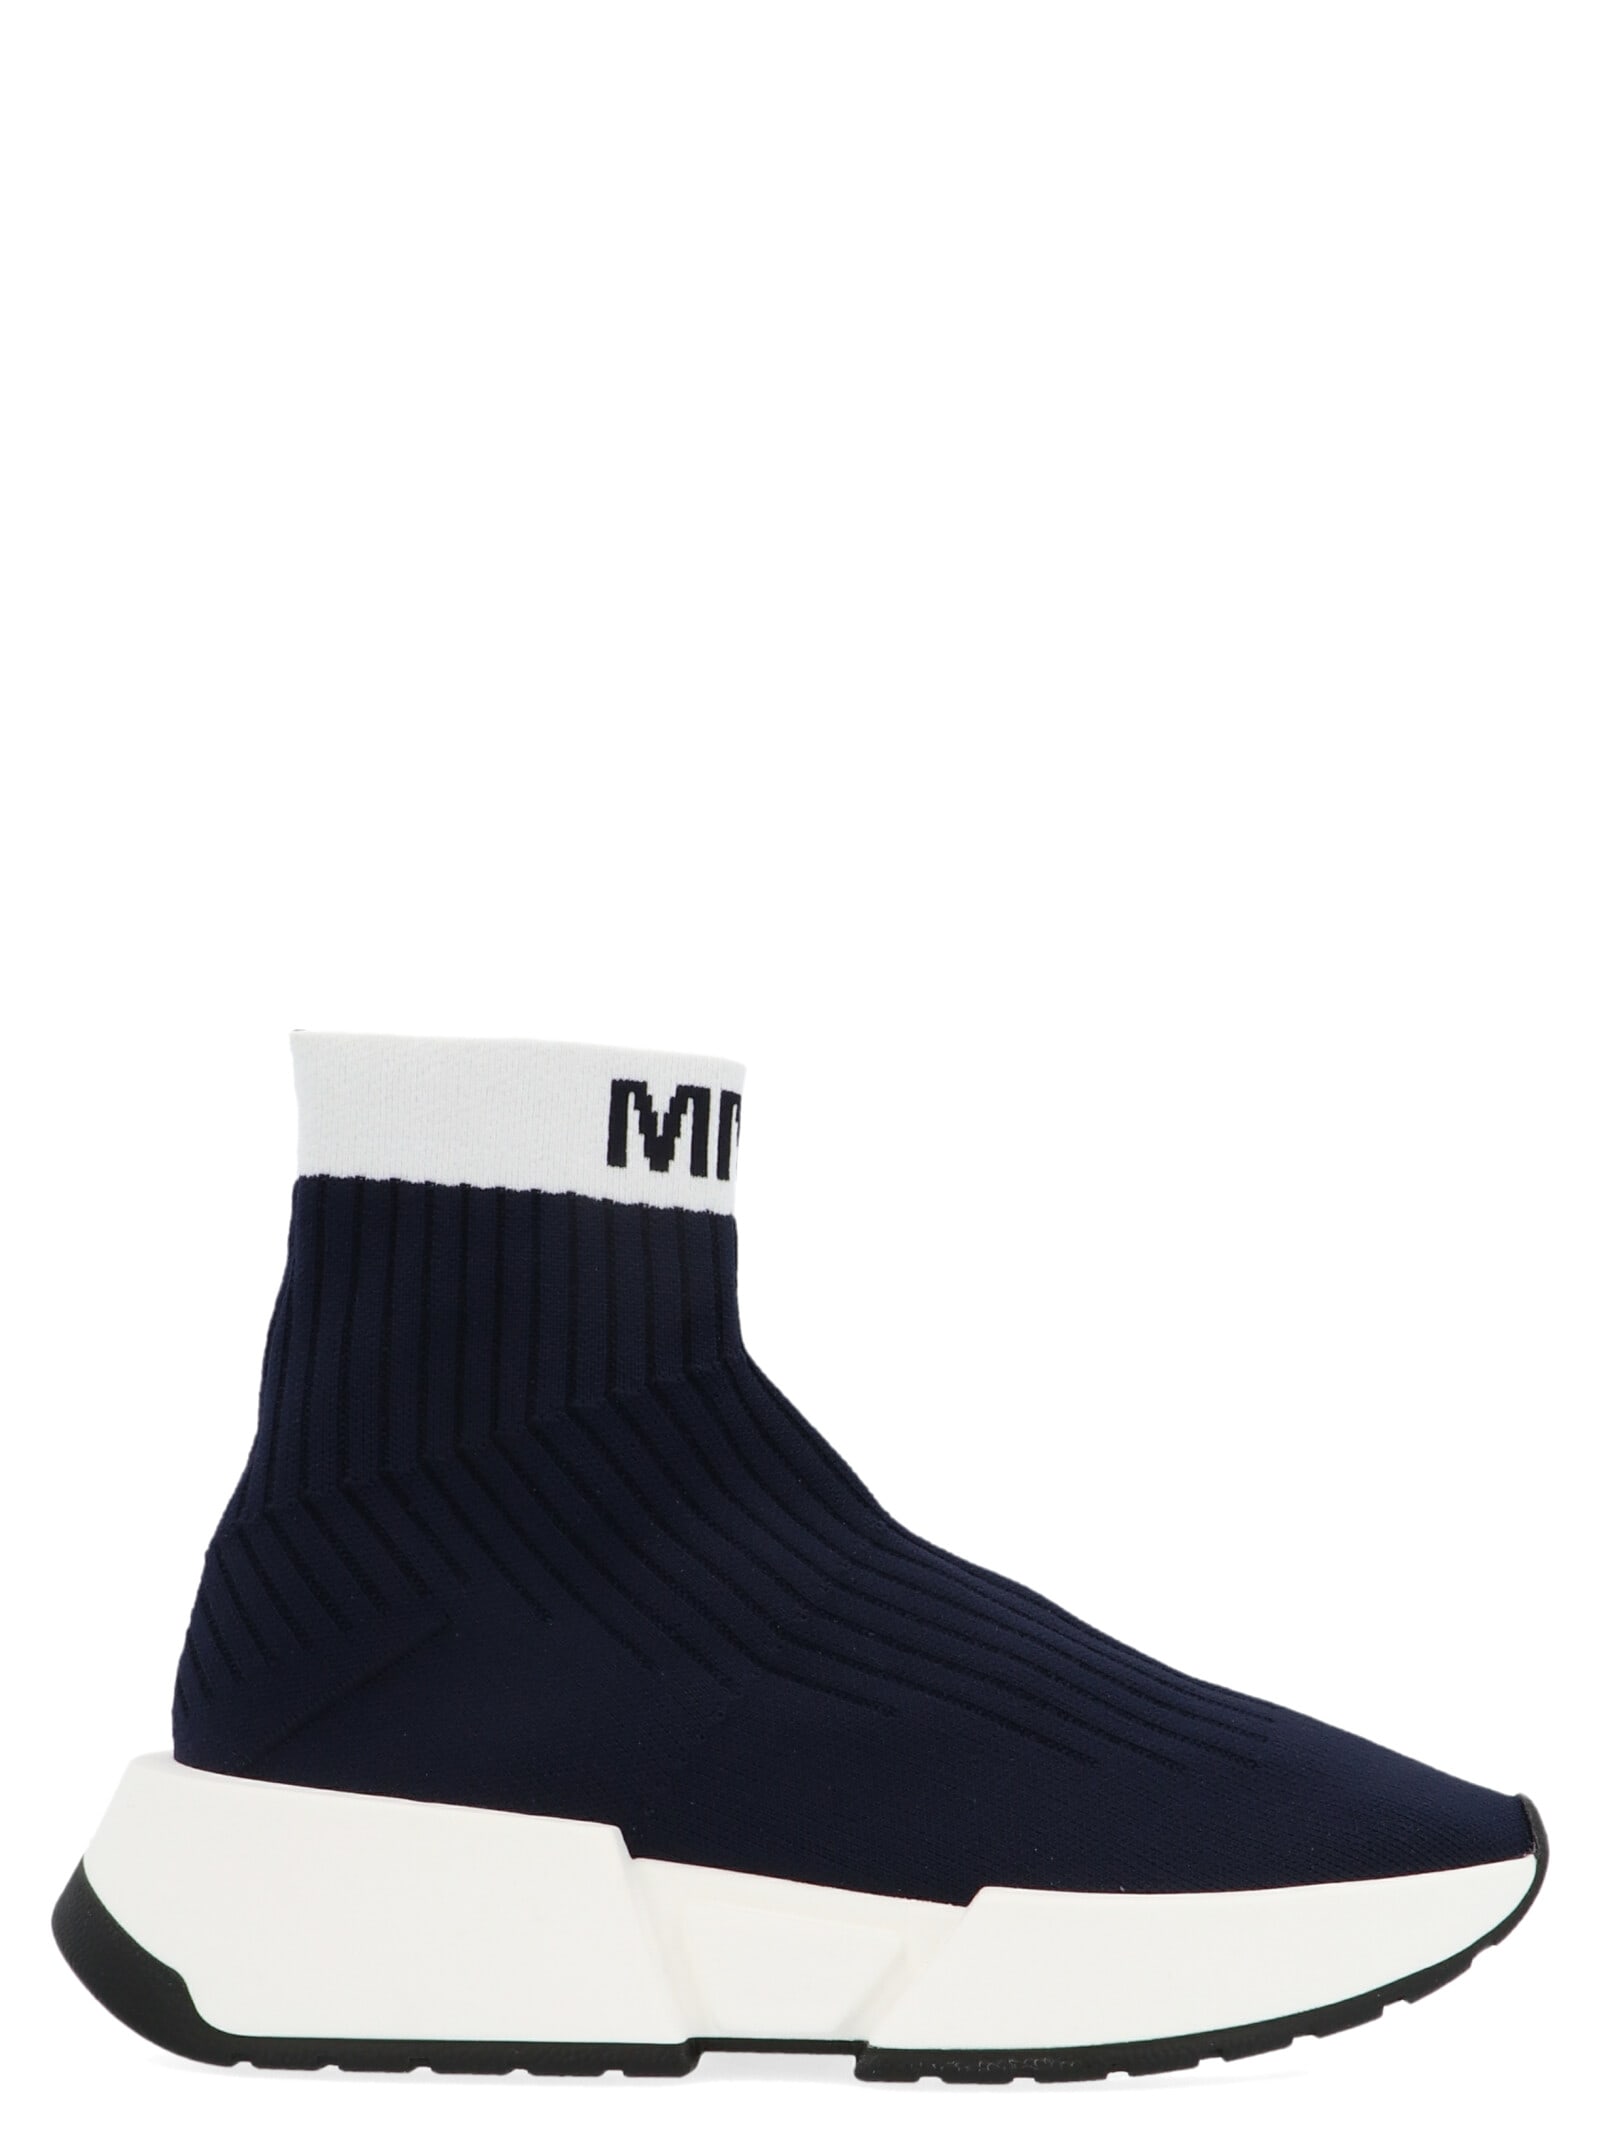 MM6 Maison Margiela Sneakers | italist 